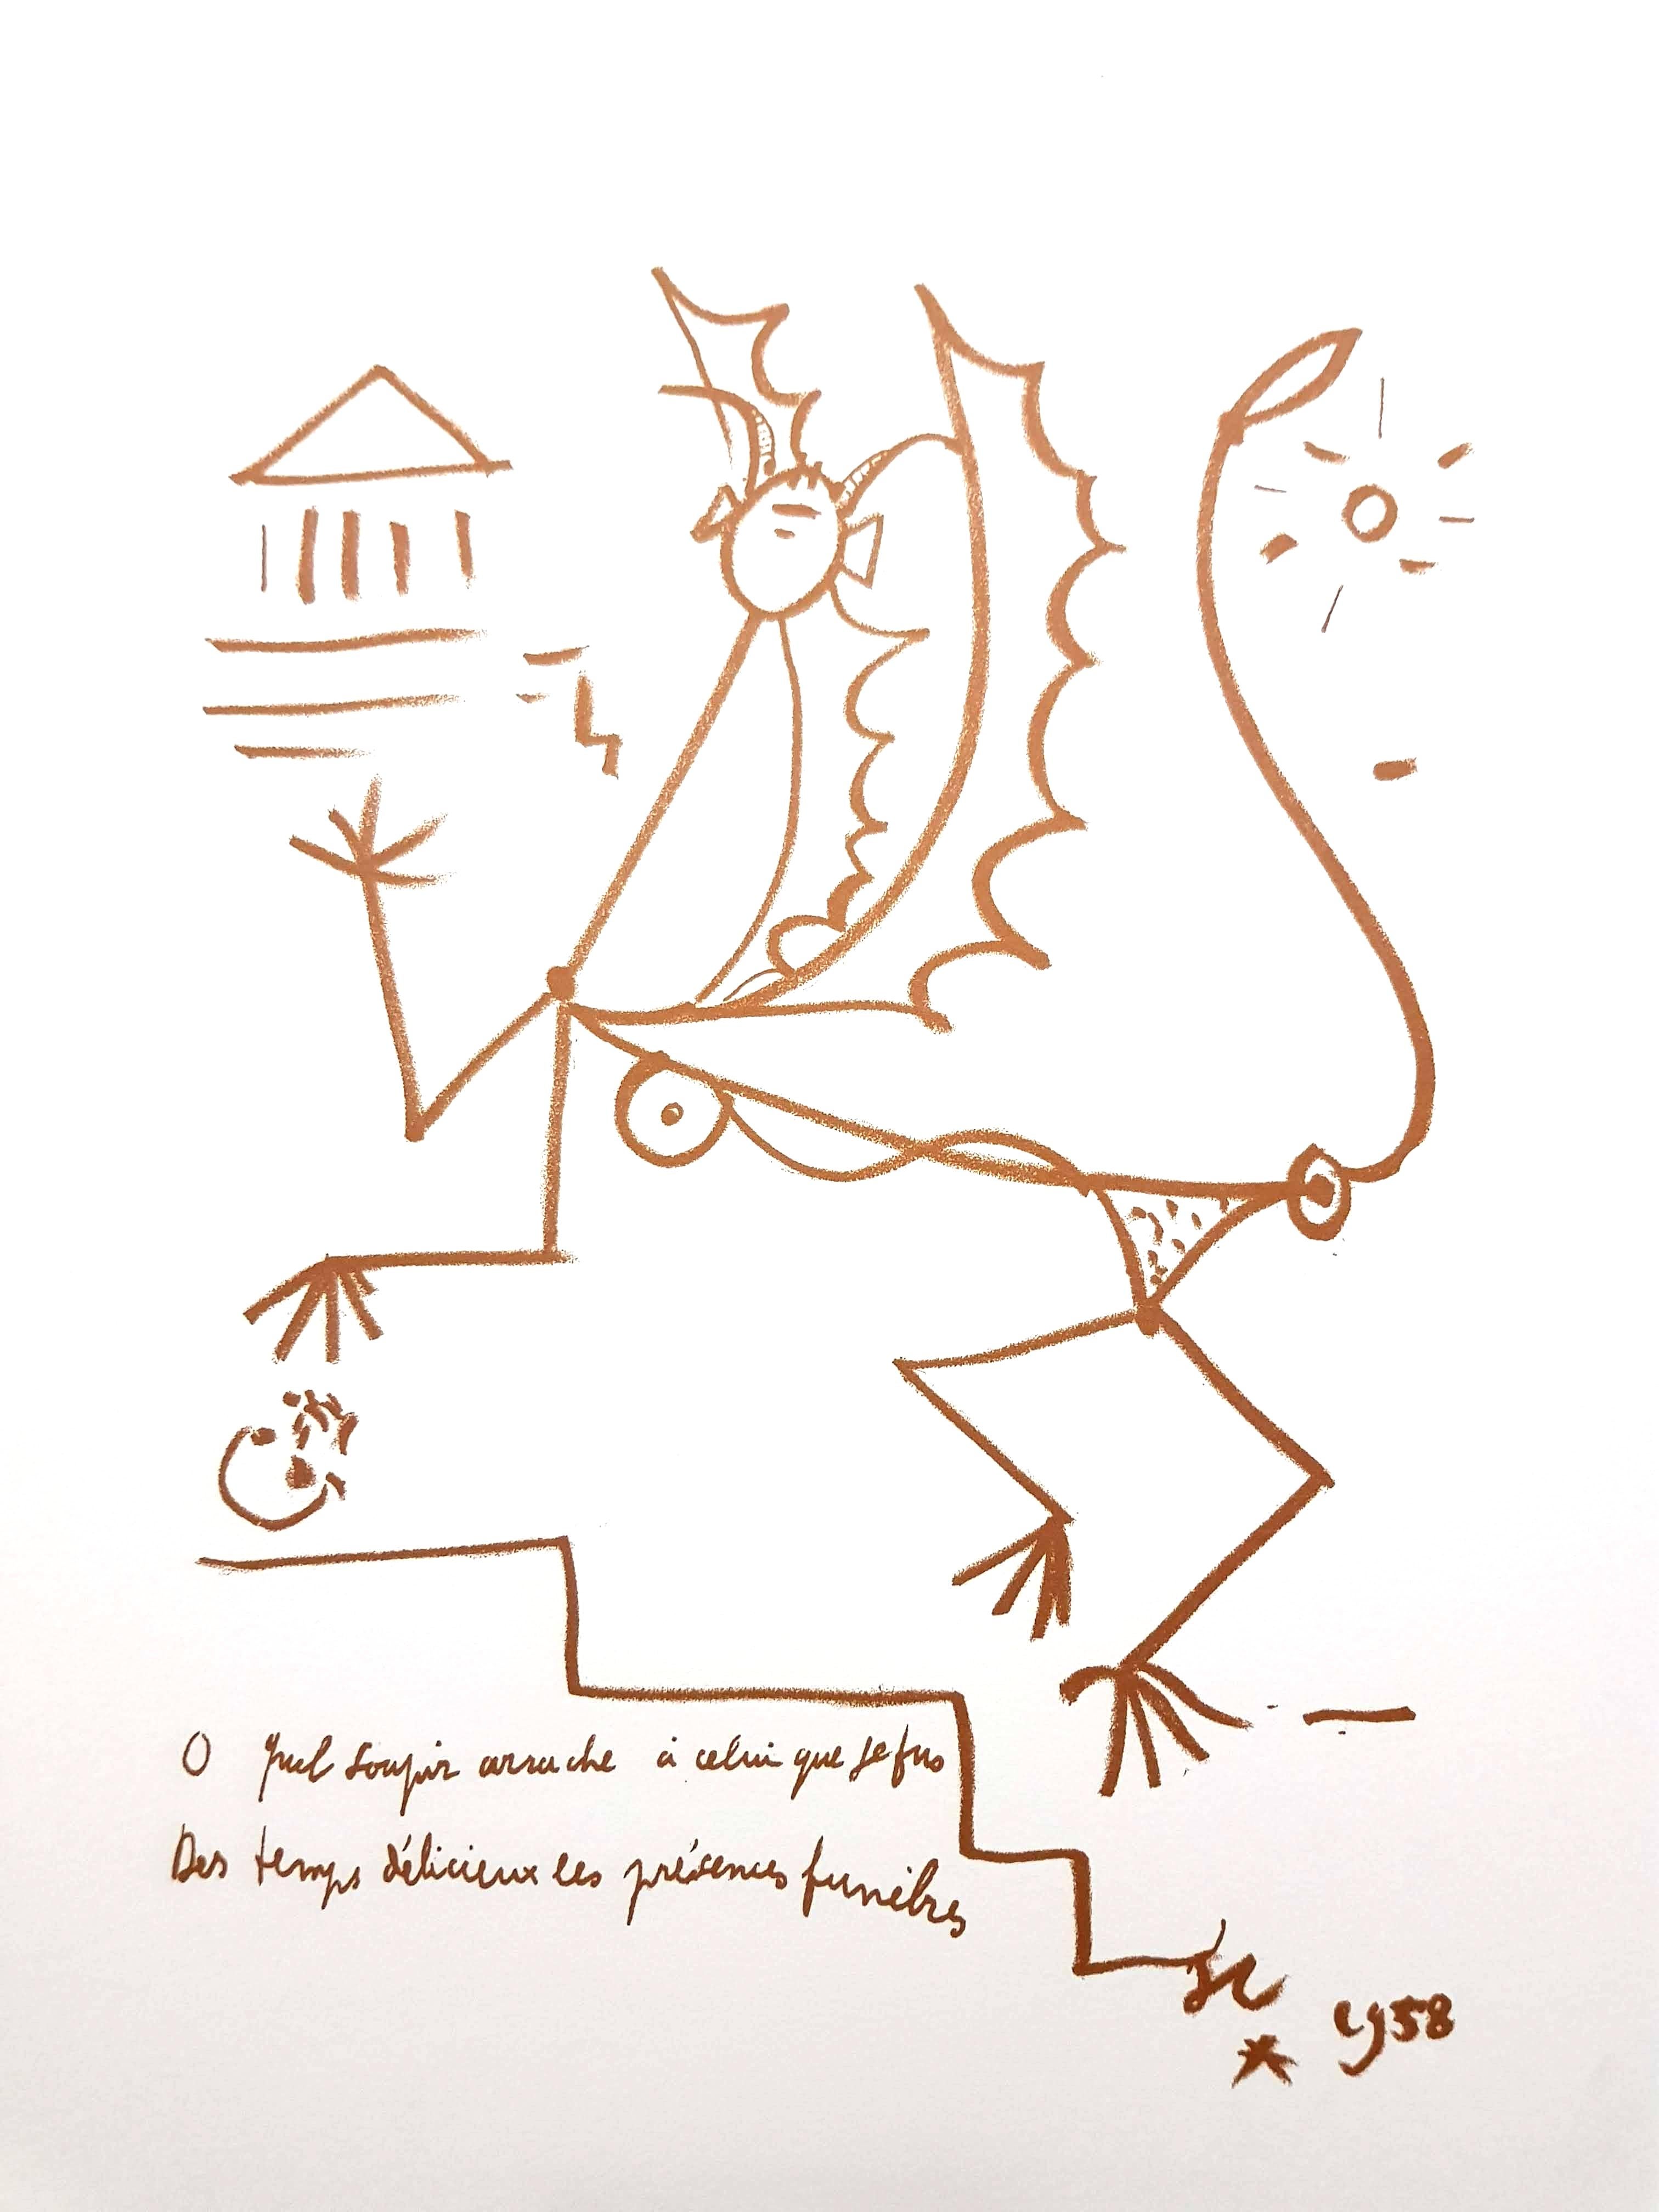 Original-Lithographie von Jean Cocteau
Titel: Surrealistische Kreatur
In der Platte signiert
Abmessungen: 32 x 25,5 cm
Auflage: 200
1959
Verlag: Bibliophiles Du Palais
Unnummeriert wie ausgegeben